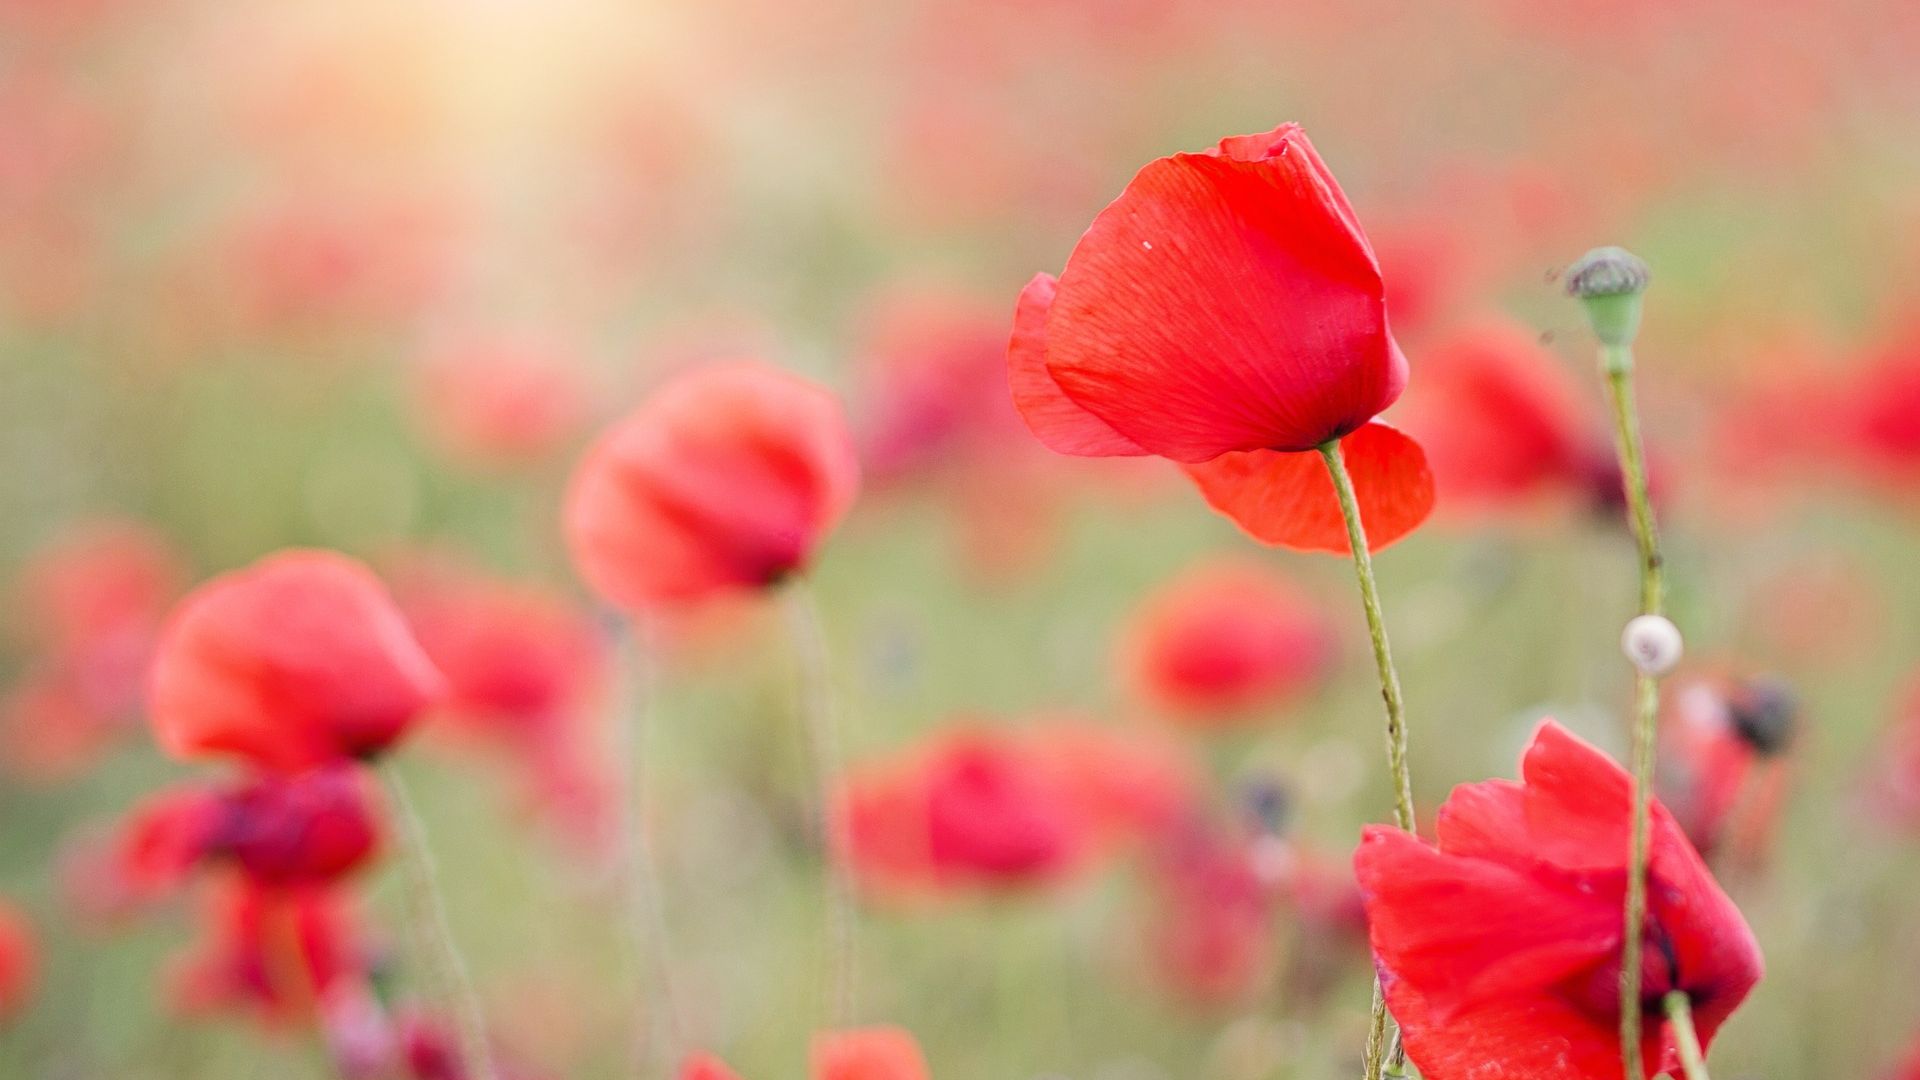 Hình nền máy tính hoa đỏ trên đồng, hoa Anh Đào, đồng cỏ, mờ, HD sẽ khiến bạn tận hưởng một thiên đường thiên nhiên cực kỳ tuyệt đẹp. Với hoa Anh Đào đang nở rộ trên đồng cỏ mềm mại, bức hình này sẽ khiến bạn ngất ngây và đắm say trong cảm giác thư thái nhất.